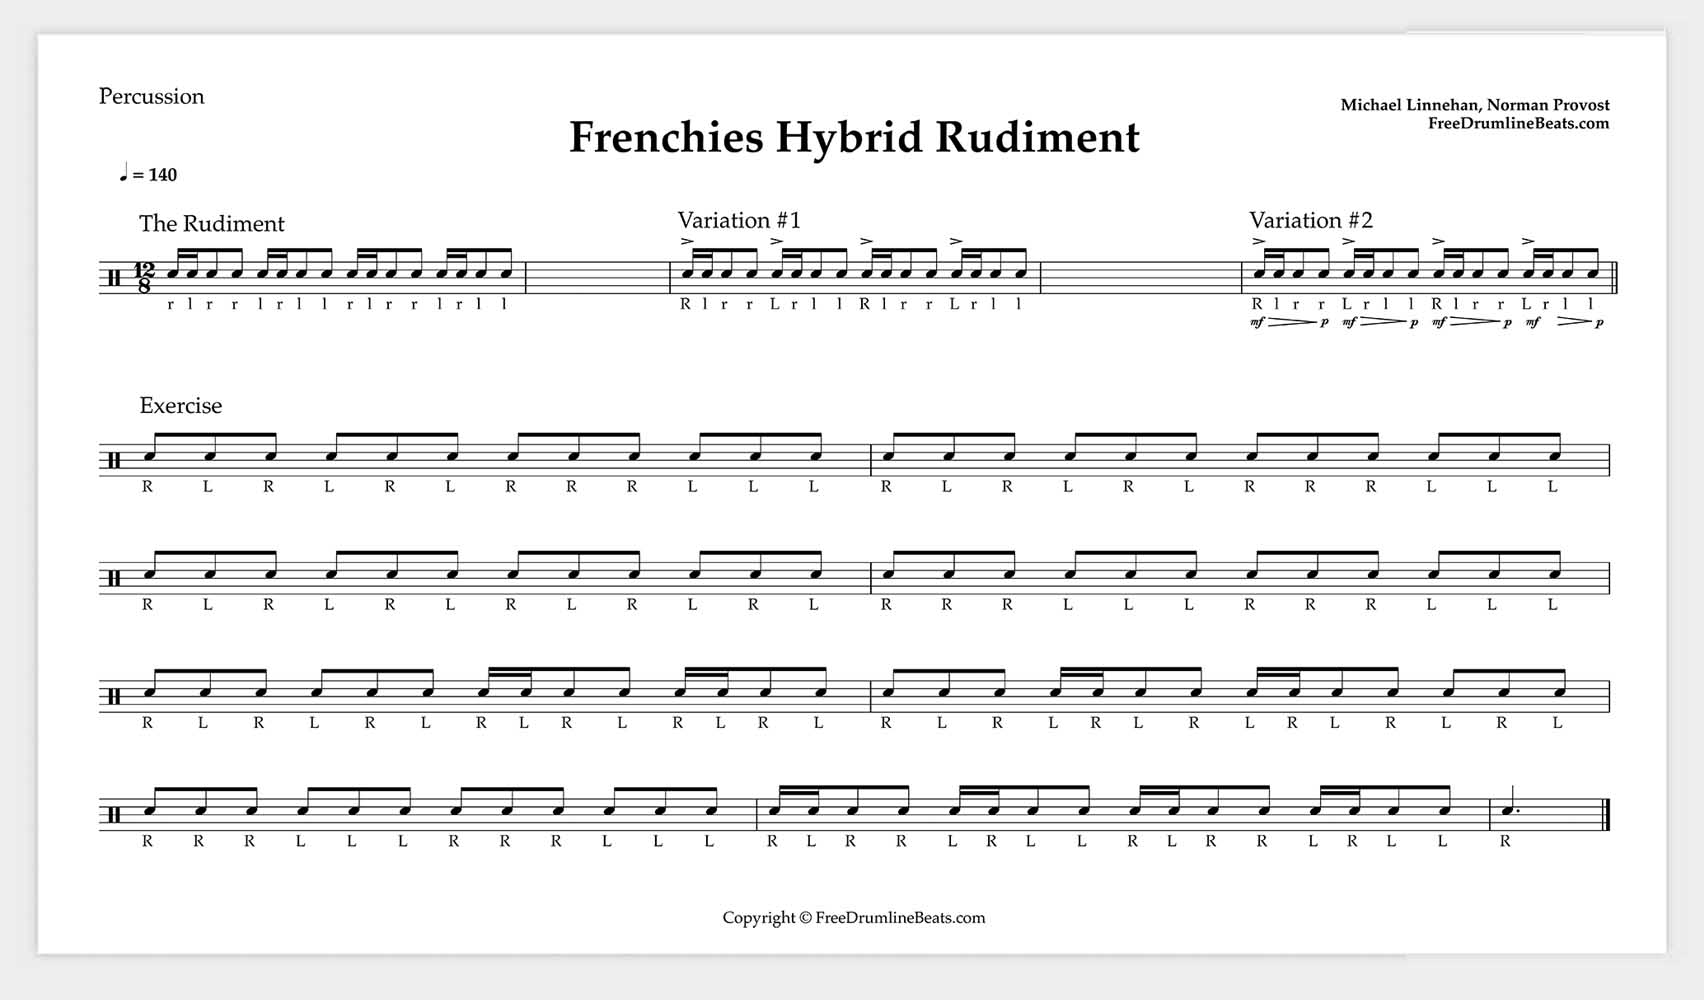 Frenchies Hybrid Rudiment Drumline Exercise.